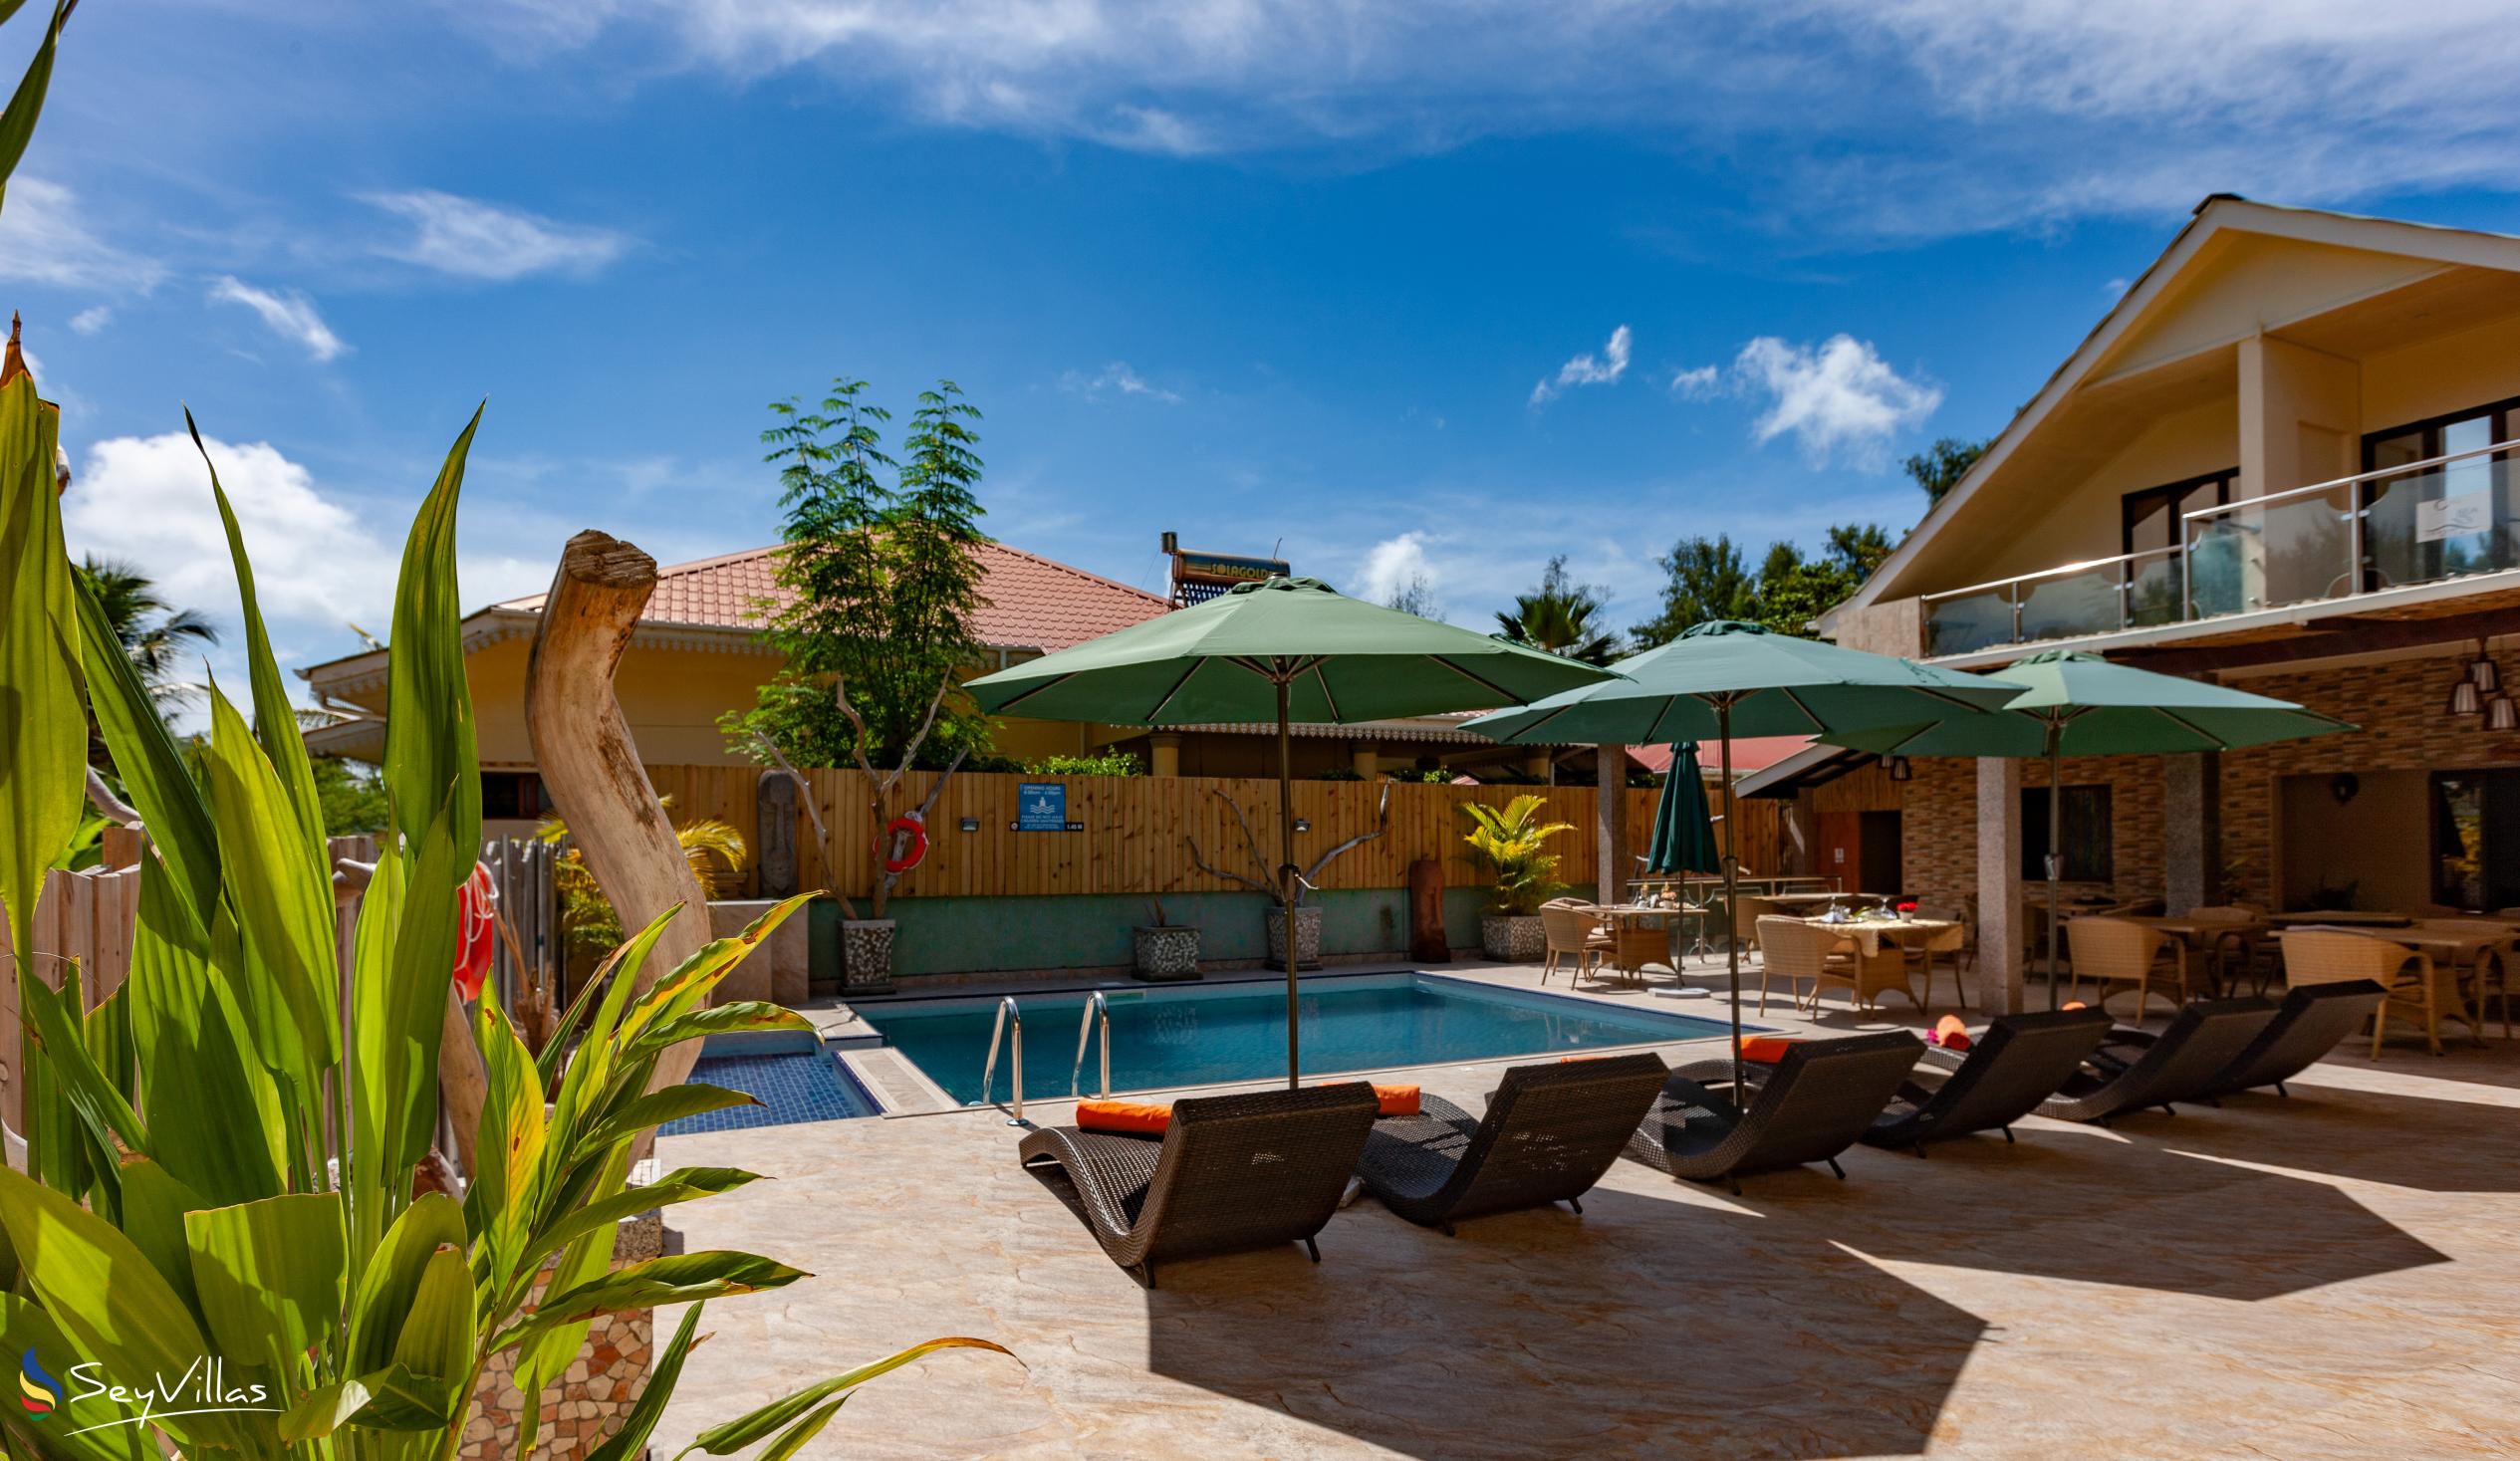 Foto 5: Chez Bea Villa - Aussenbereich - Praslin (Seychellen)